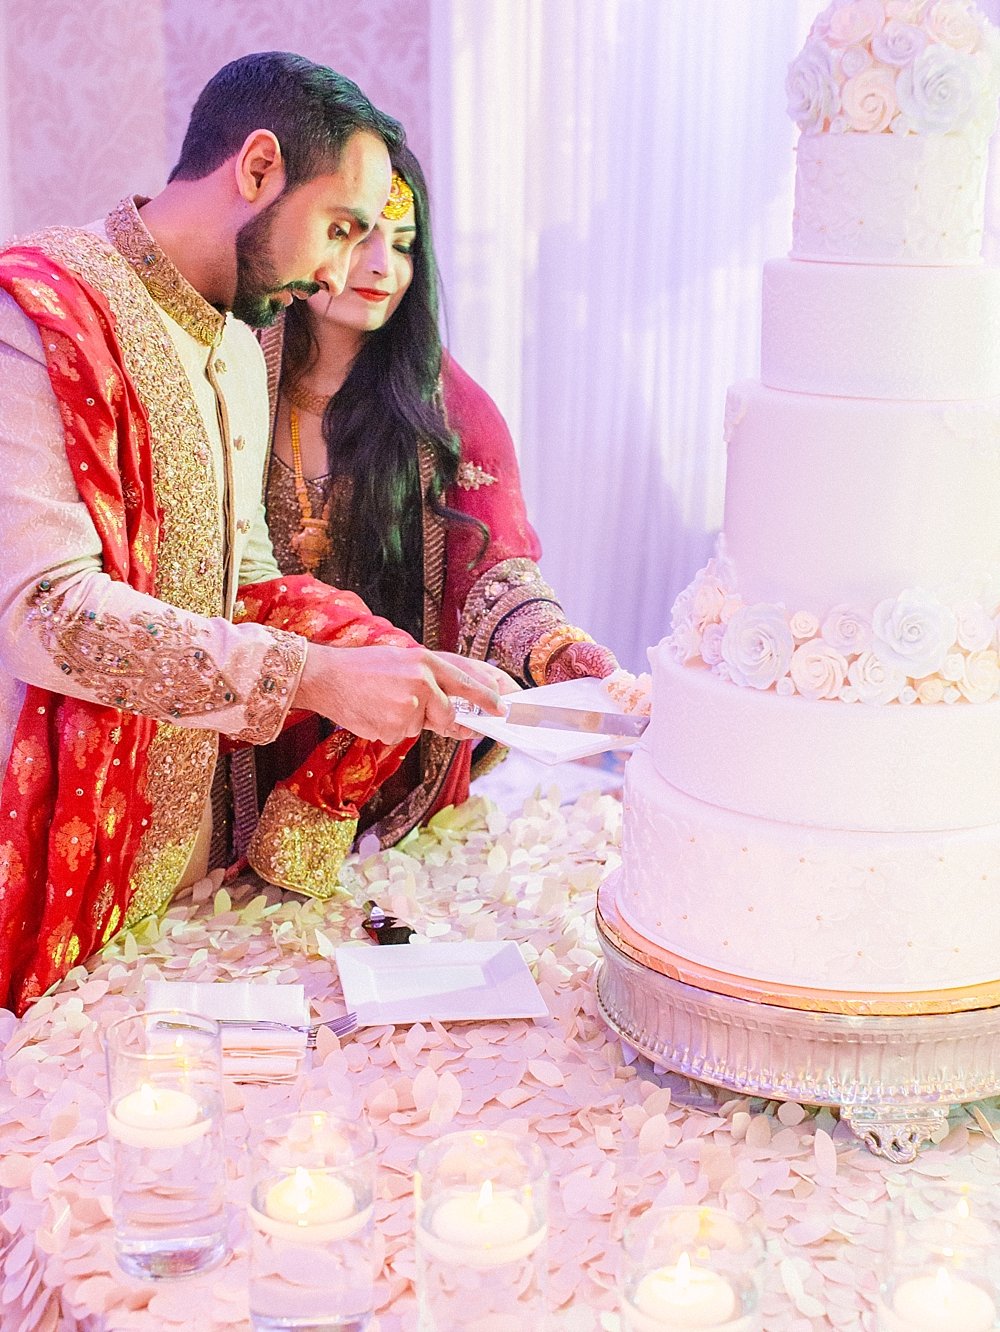  Indian Wedding Hilton Bonnet Creek Waldorf Astoria - Florida Wedding Reception - Timeless Imagery | Ashley Holstein  #weddingcake #indianwedding #cakesbylia